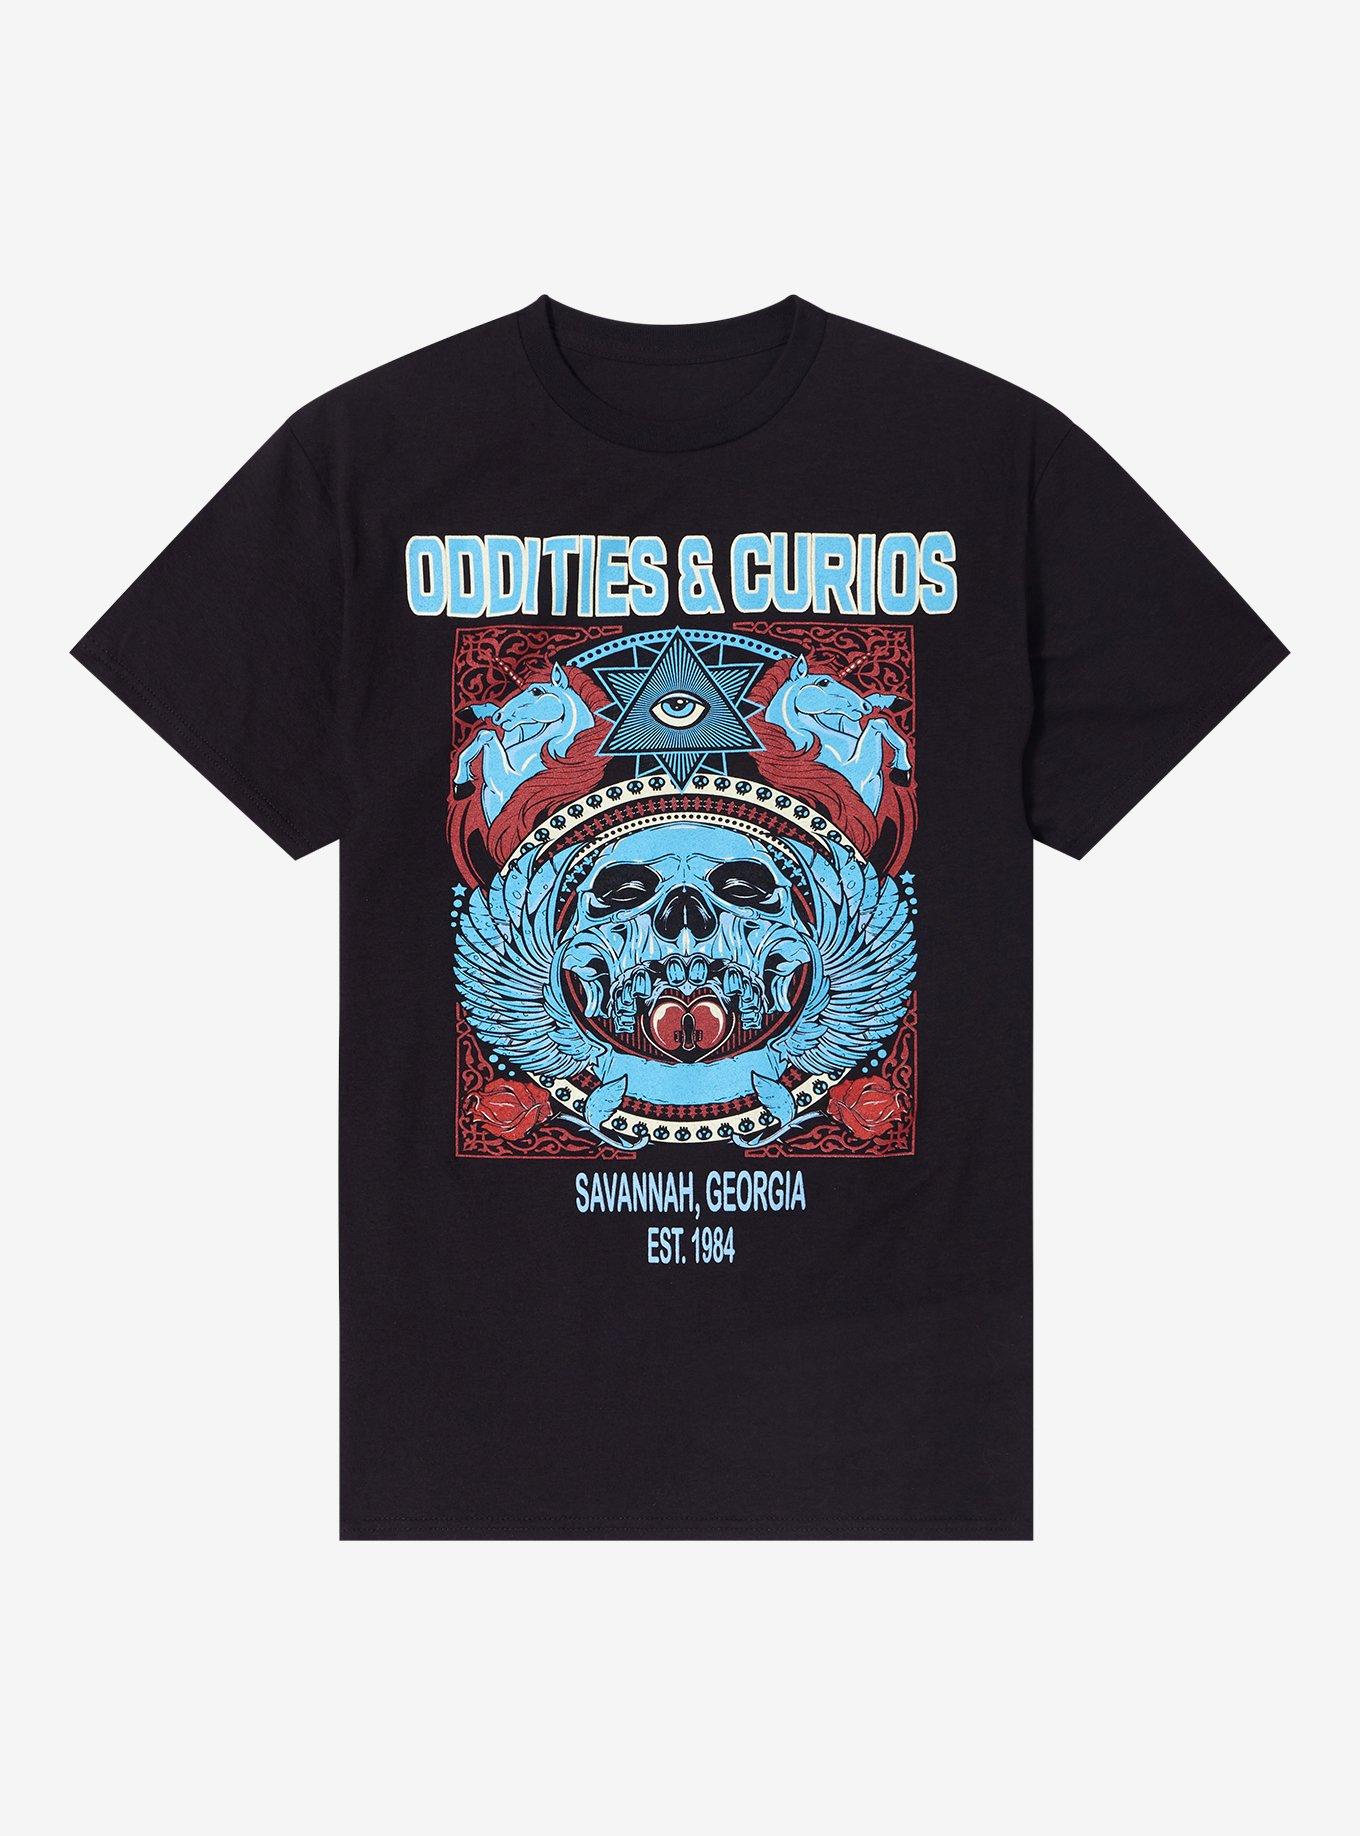 Oddities & Cruios T-Shirt